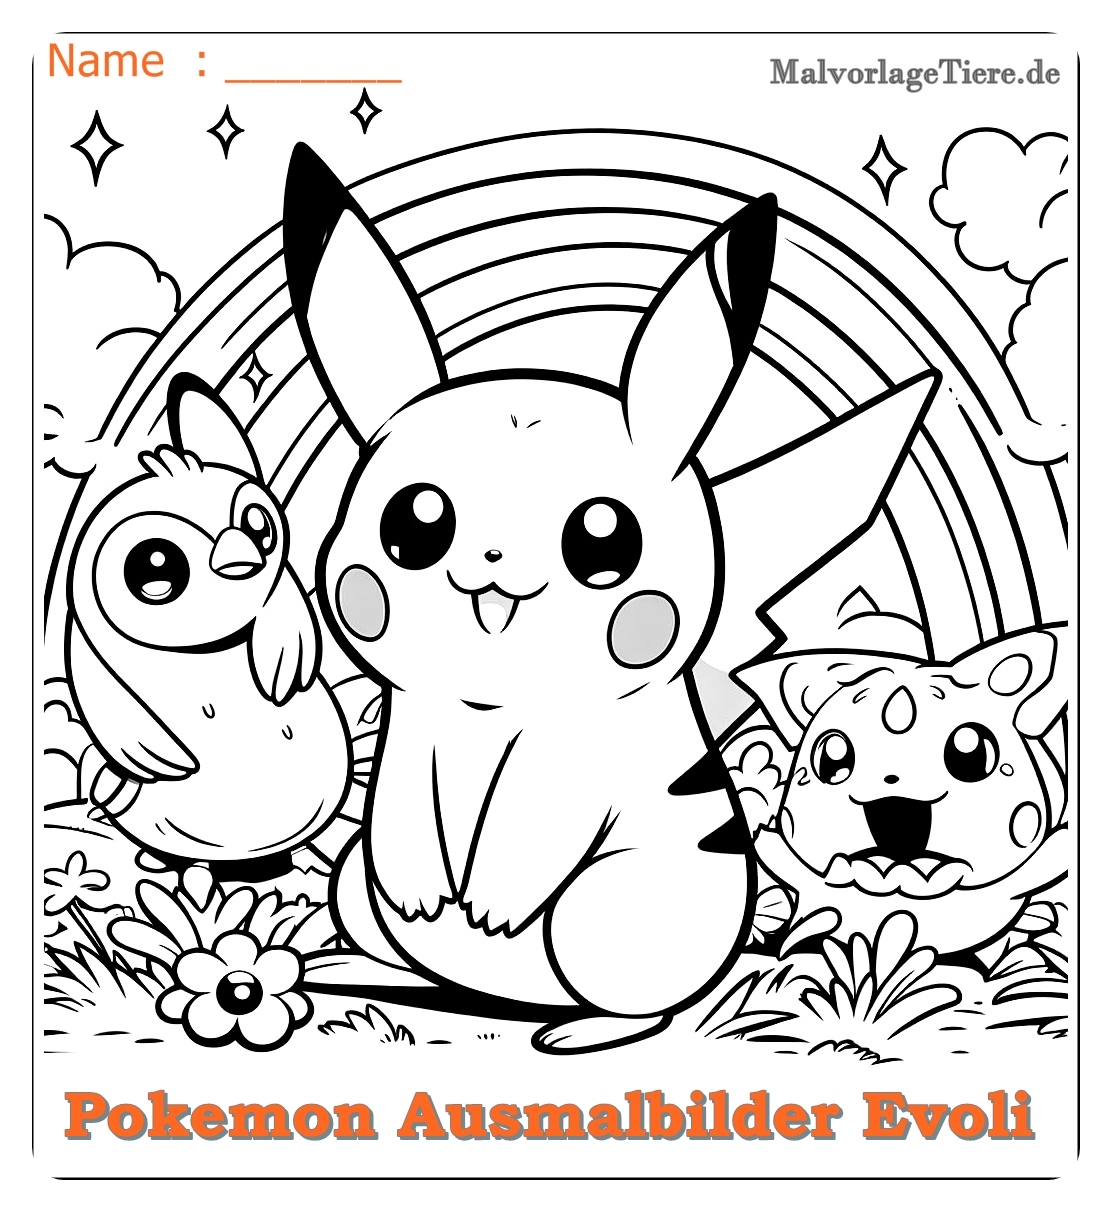 pokemon ausmalbilder evoli entwicklungen 08 by malvorlagetiere.de